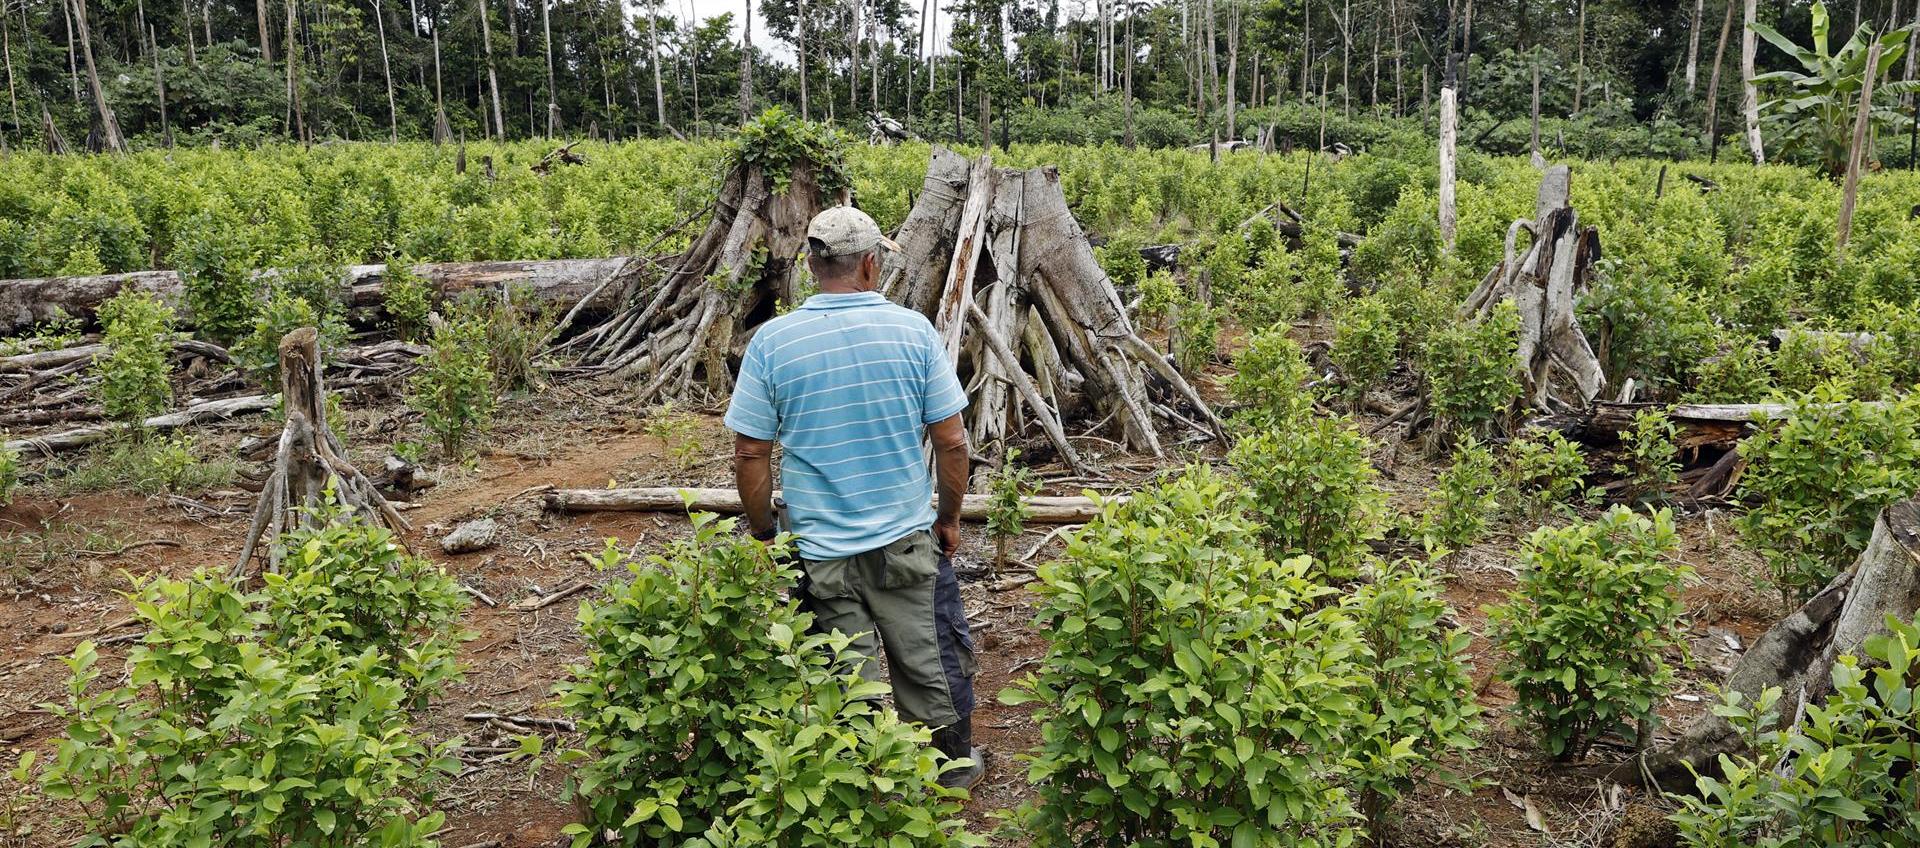 Campesino en un cultivo de coca en el Guaviare.